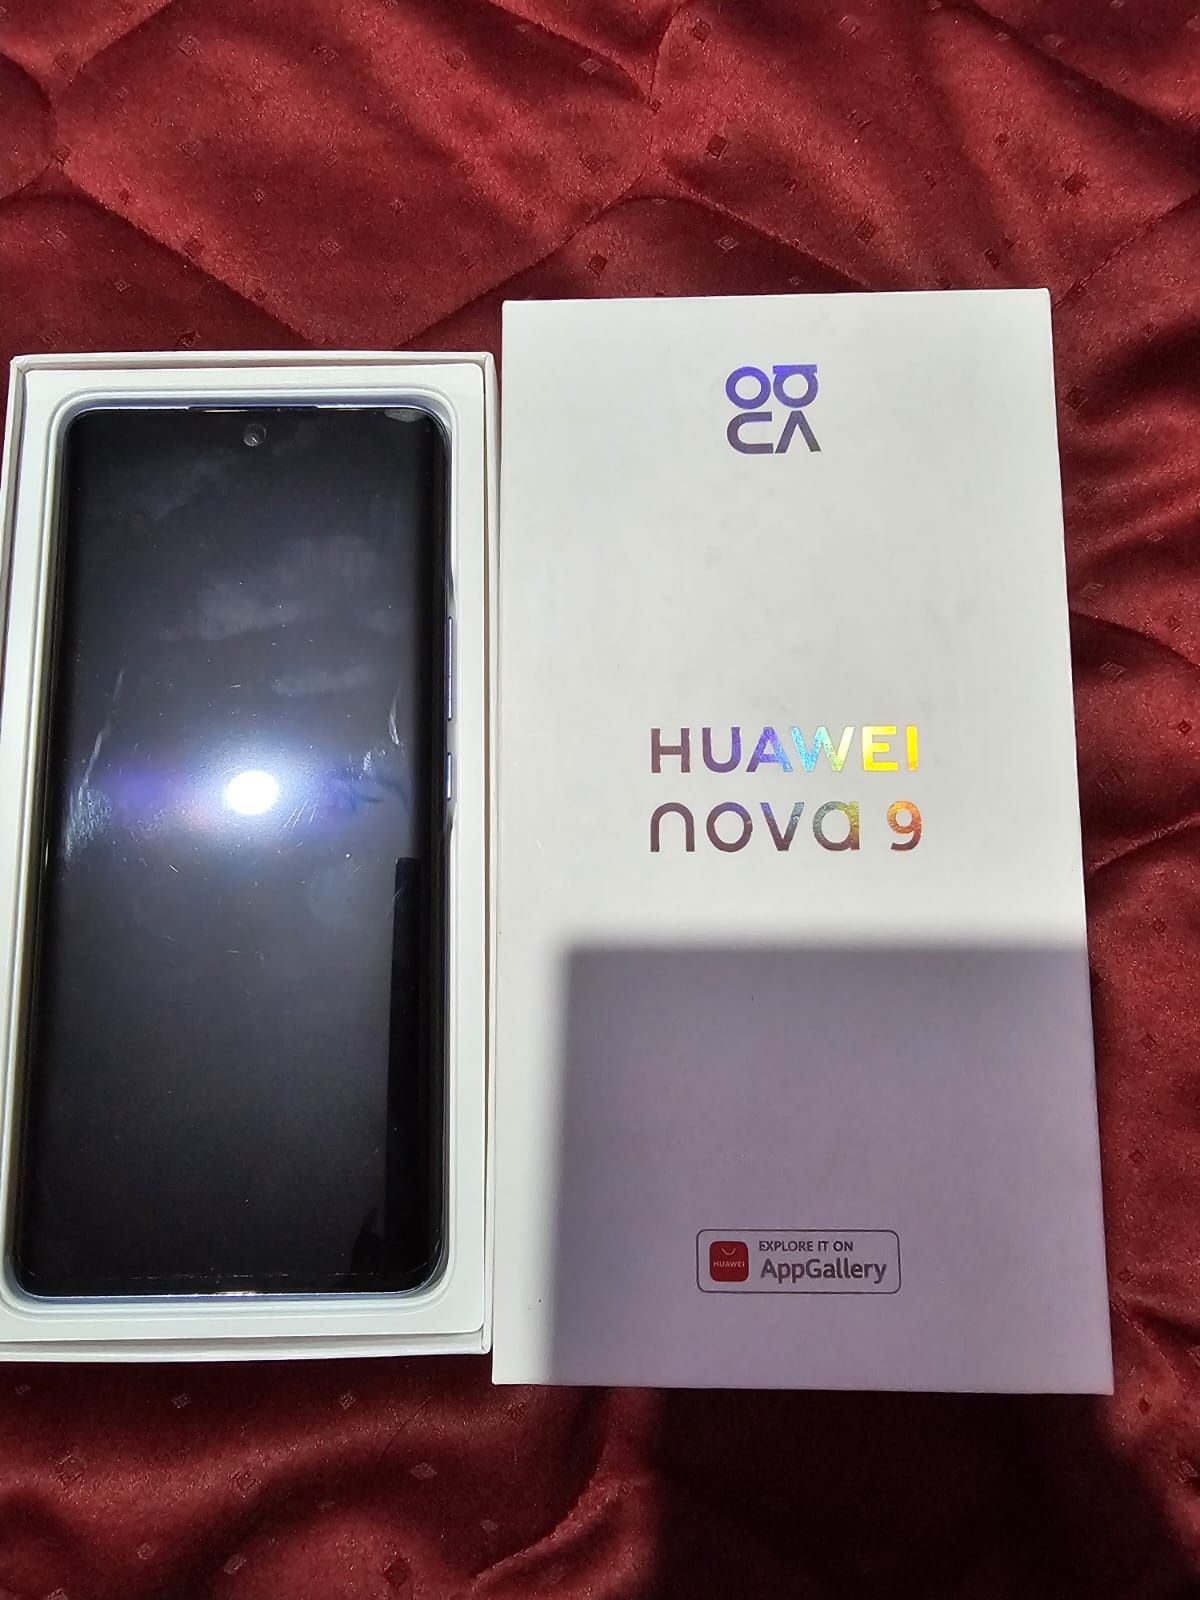 Vand Huawei Nova 9 full box